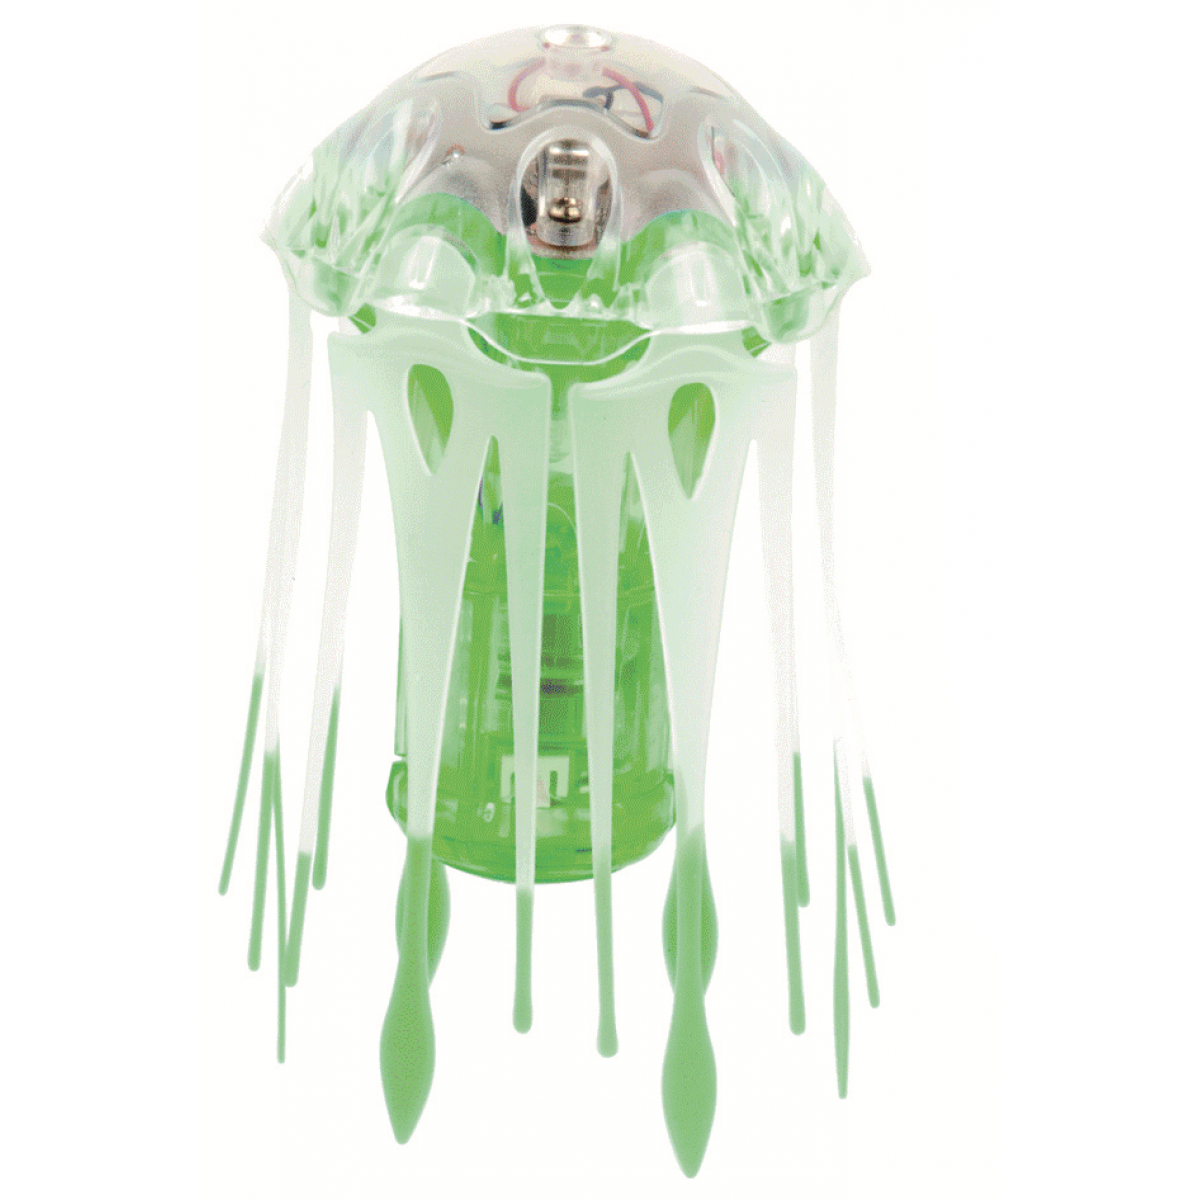 Hexbug Aquabot Medúza s akváriem - zelená